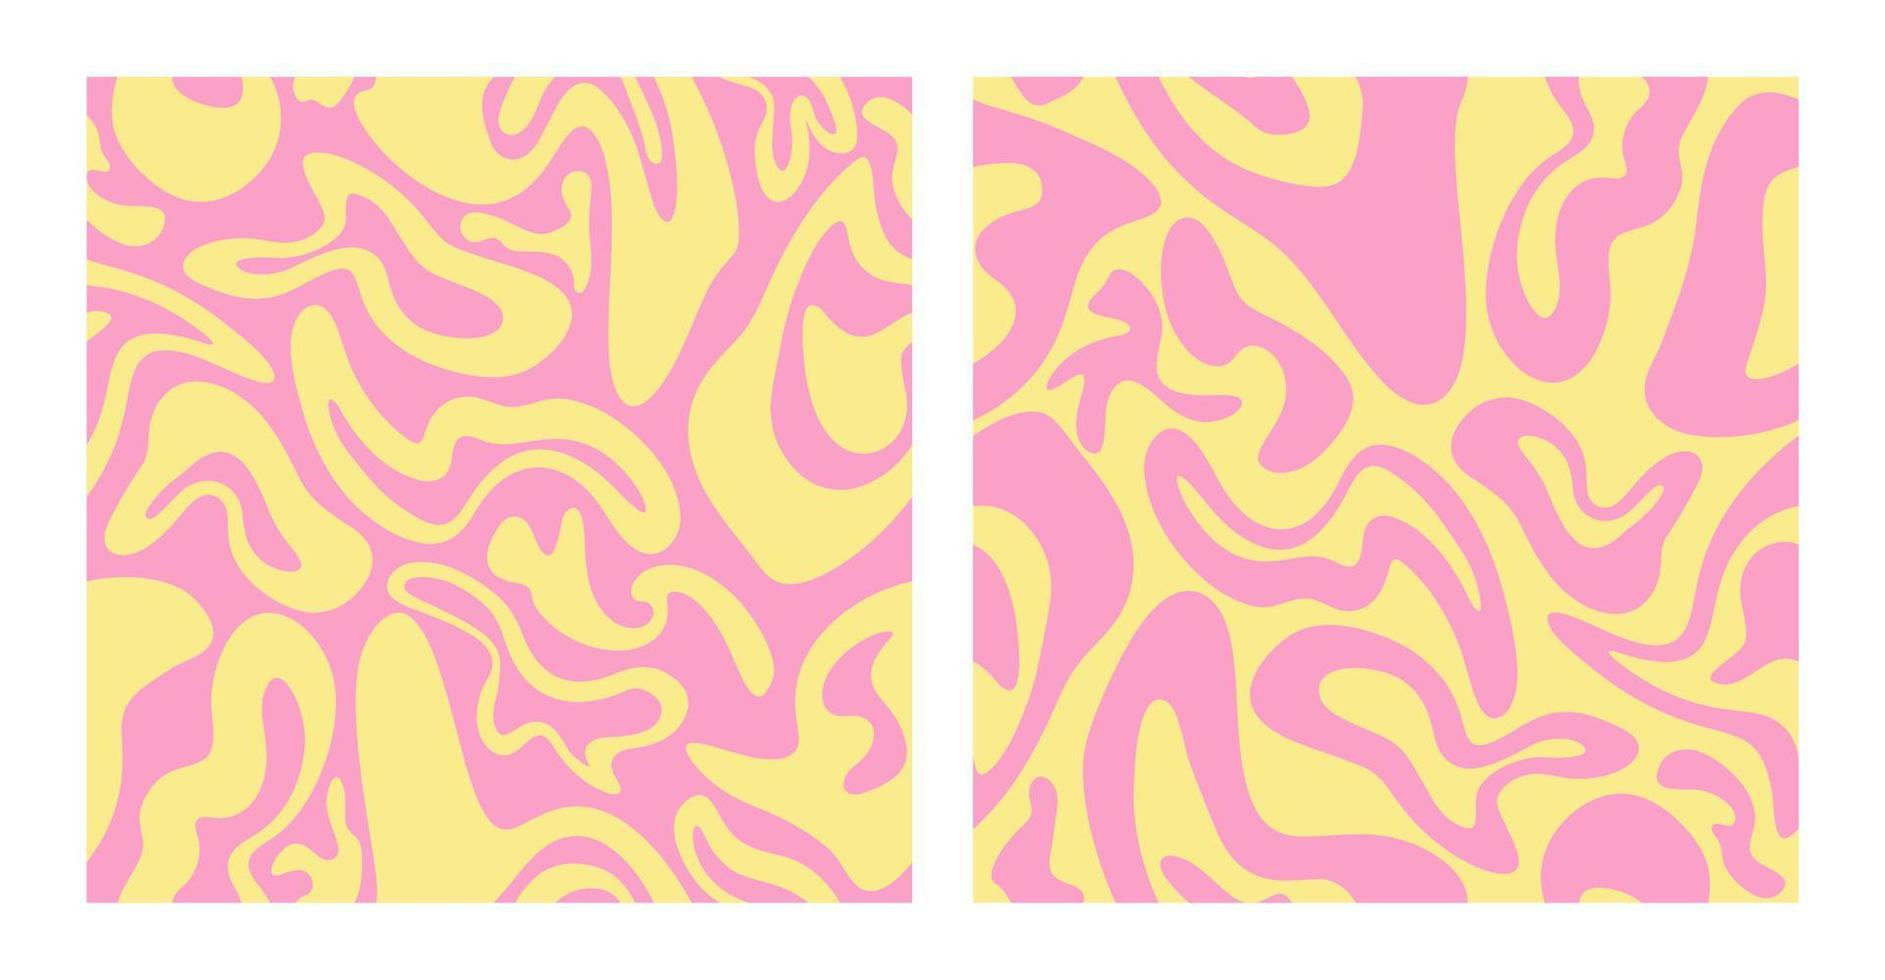 Stellen Sie cooles grooviges flüssiges nahtloses Muster ein. trendy y2k psychedelischer hintergrund. flippige Retro-Textur für Oberflächendesign. vektor